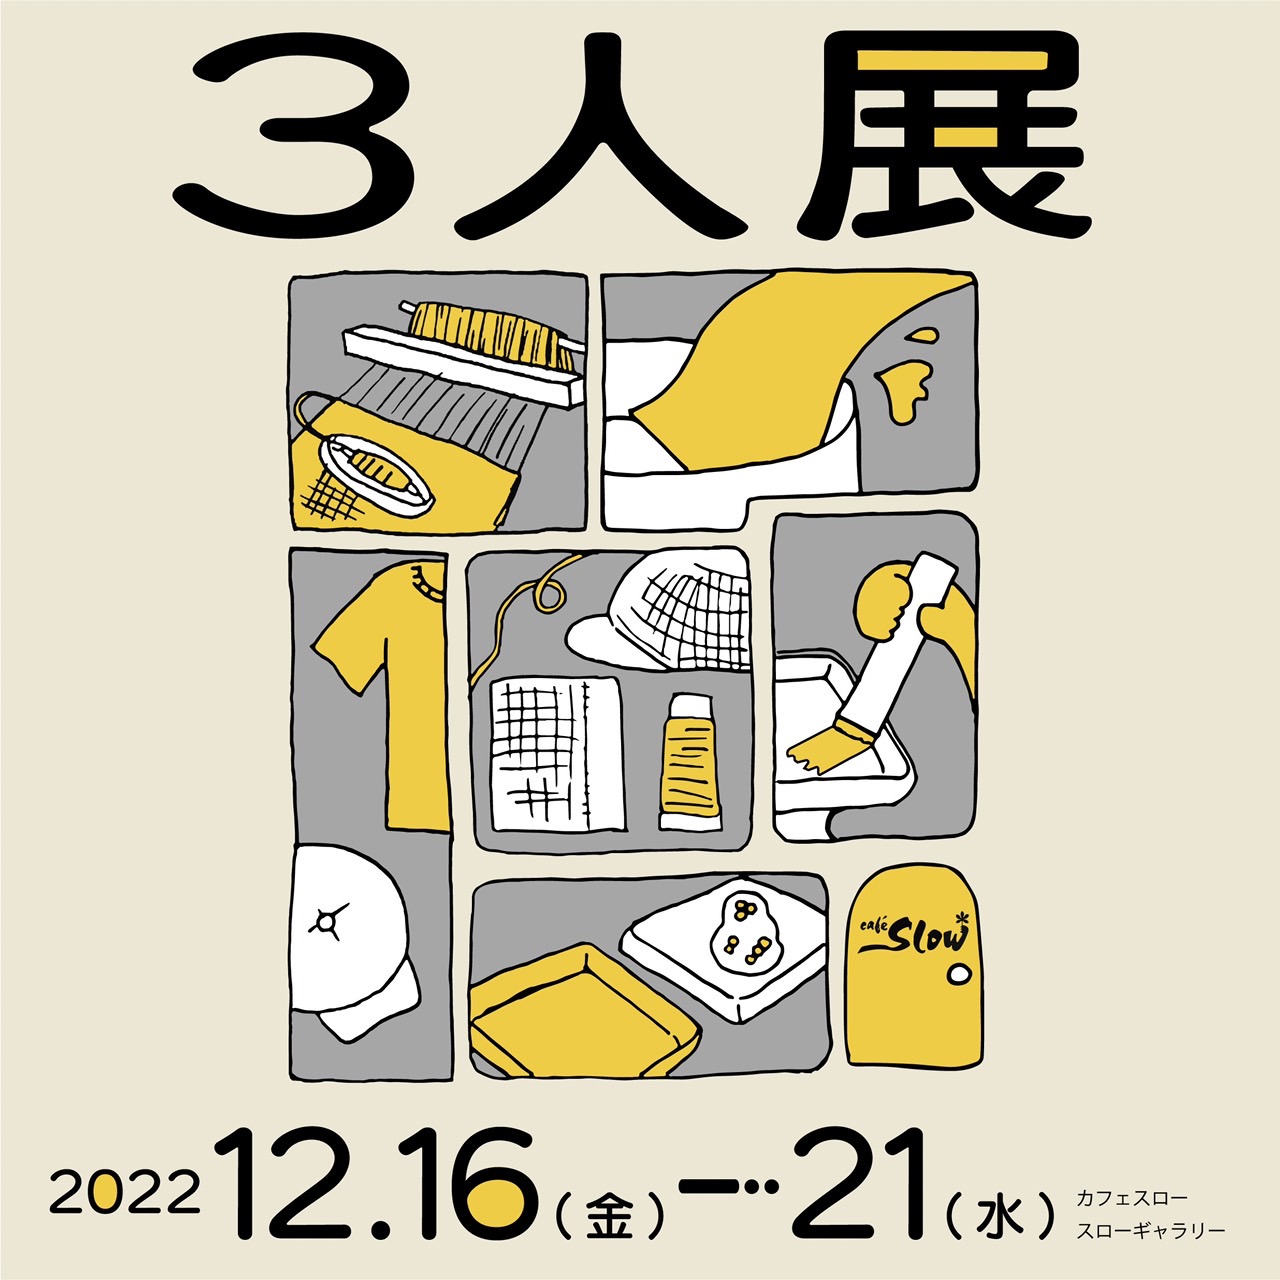 12/16(金)-21(水) 3人展